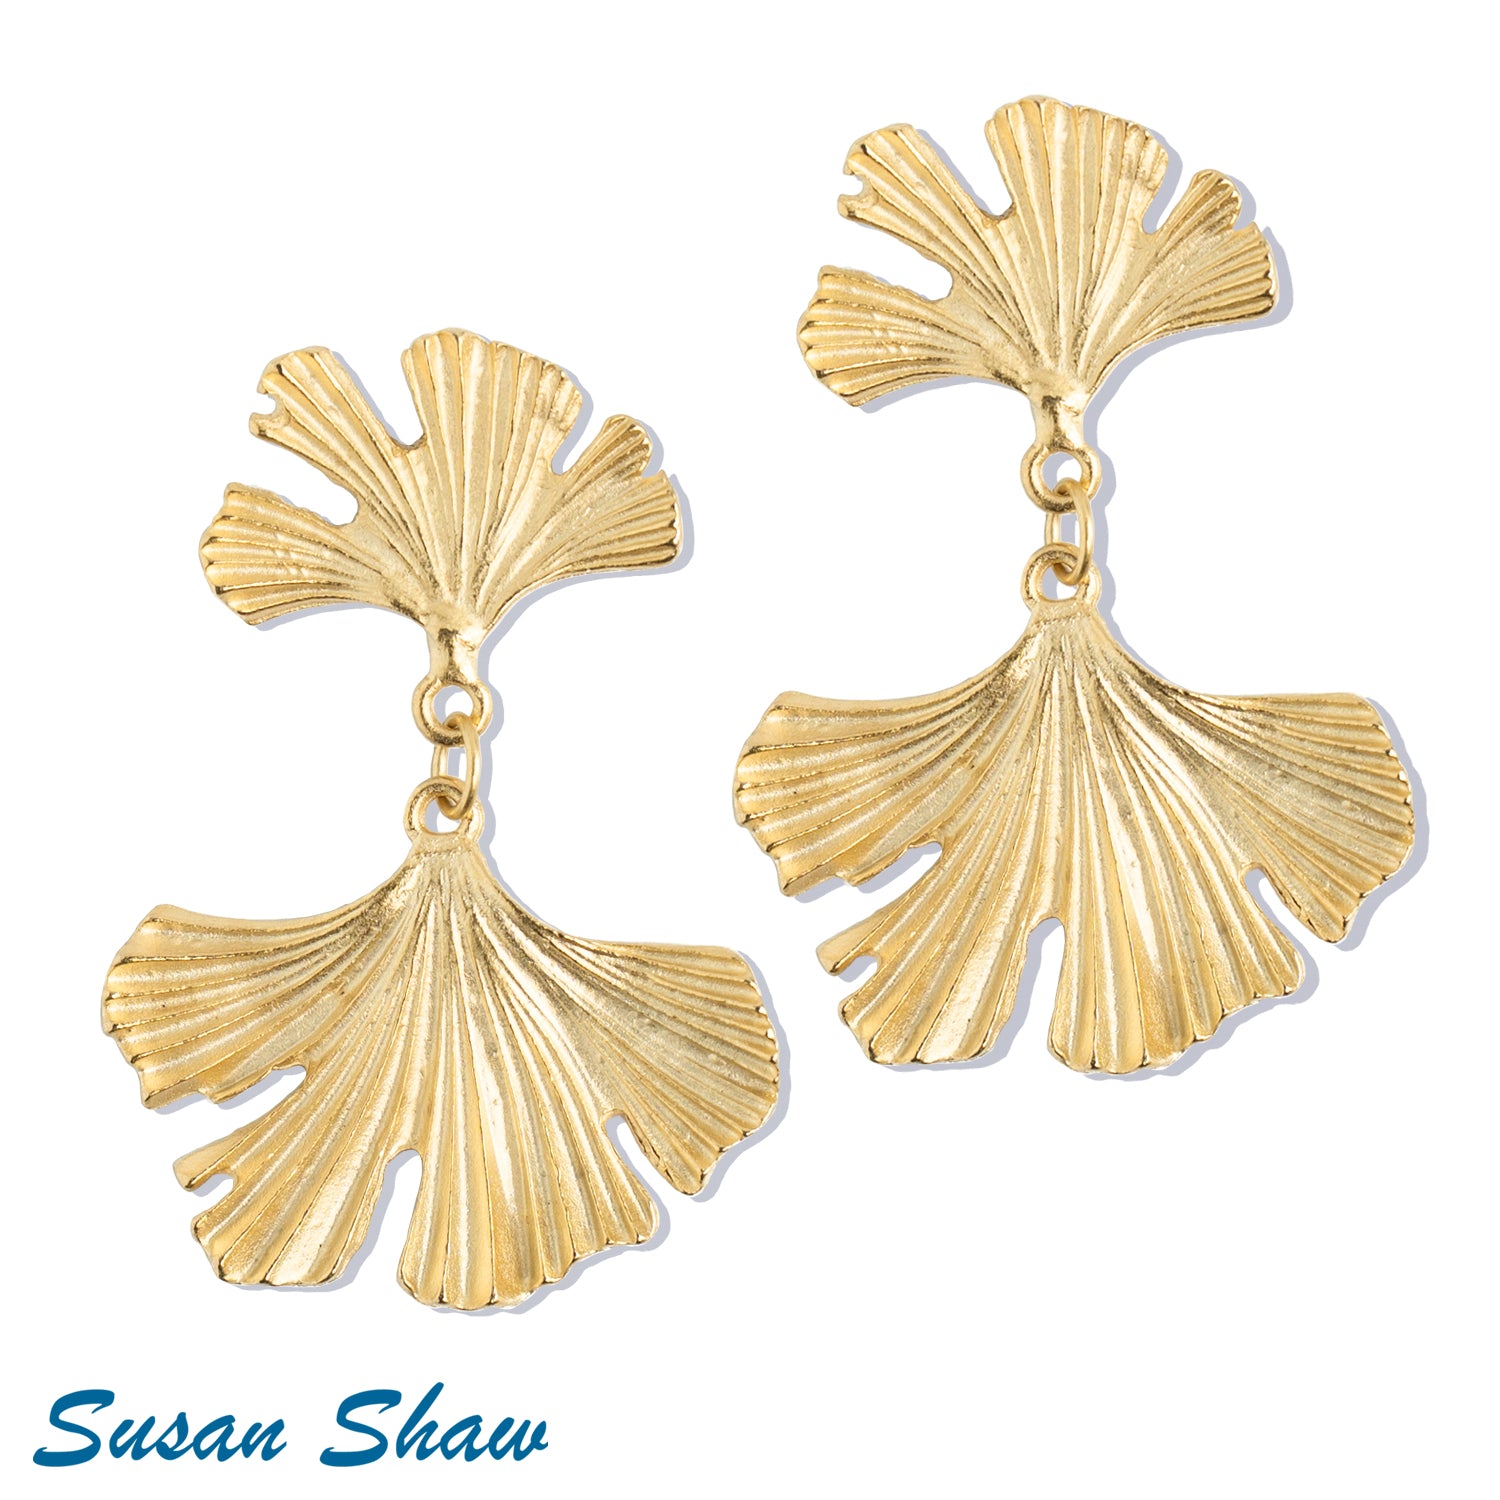 Susan Shaw Ginkgo Earrings.